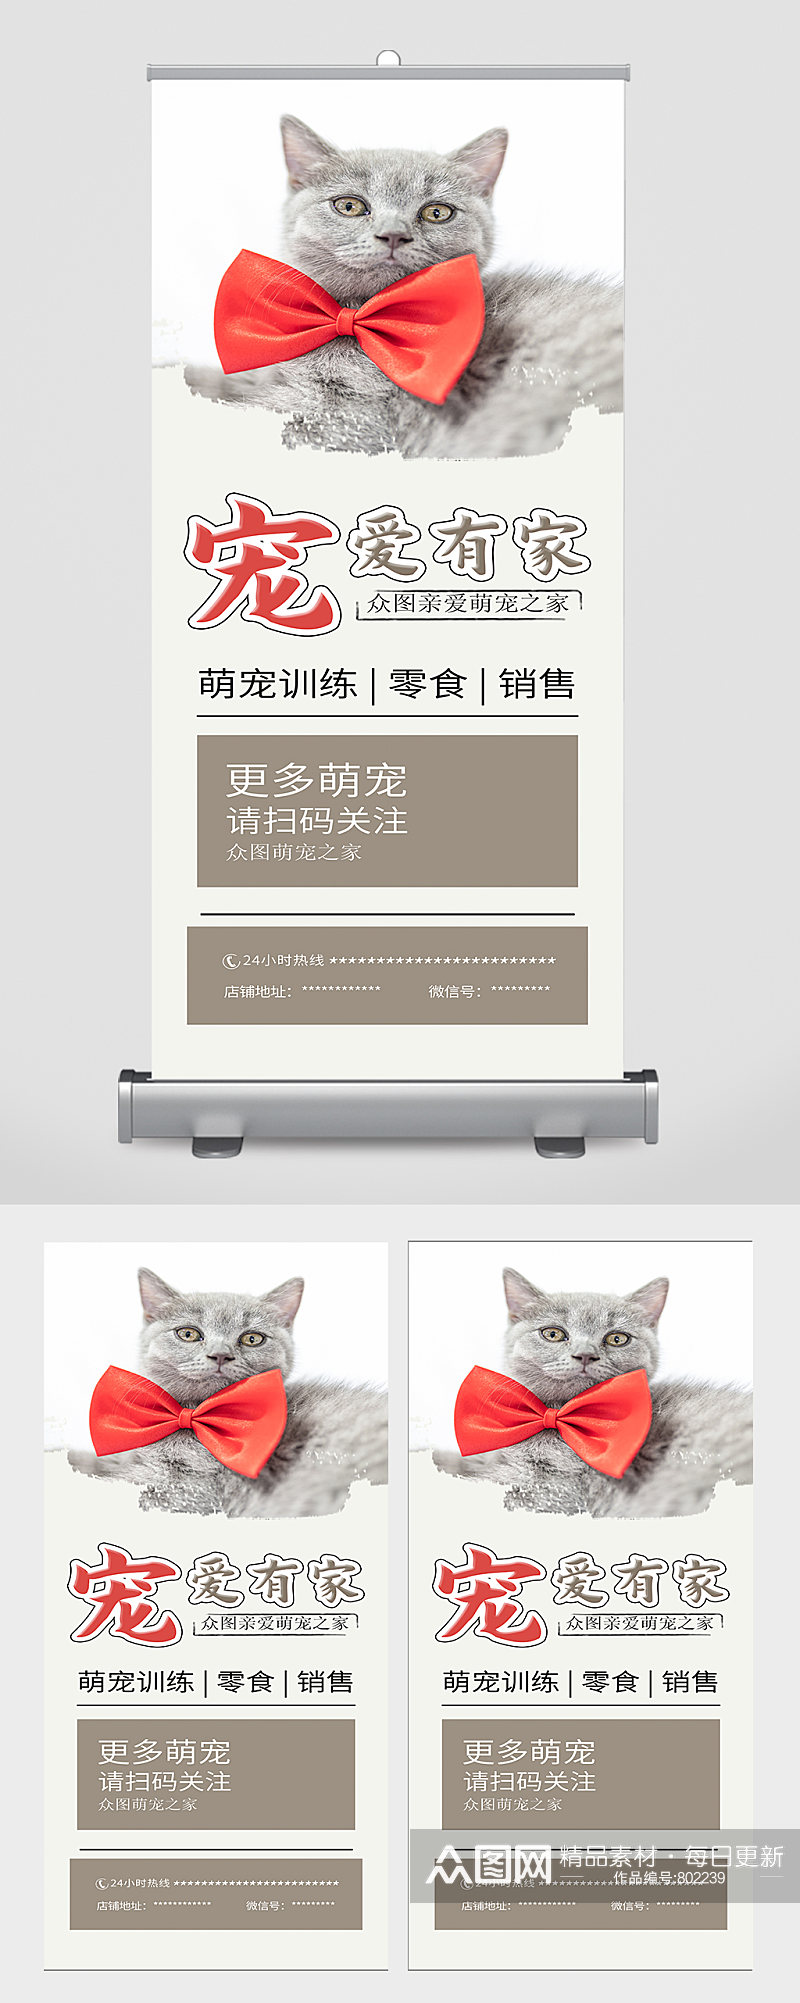 猫咪宠物馆狗狗蓝猫宠物店宣传展架海报素材